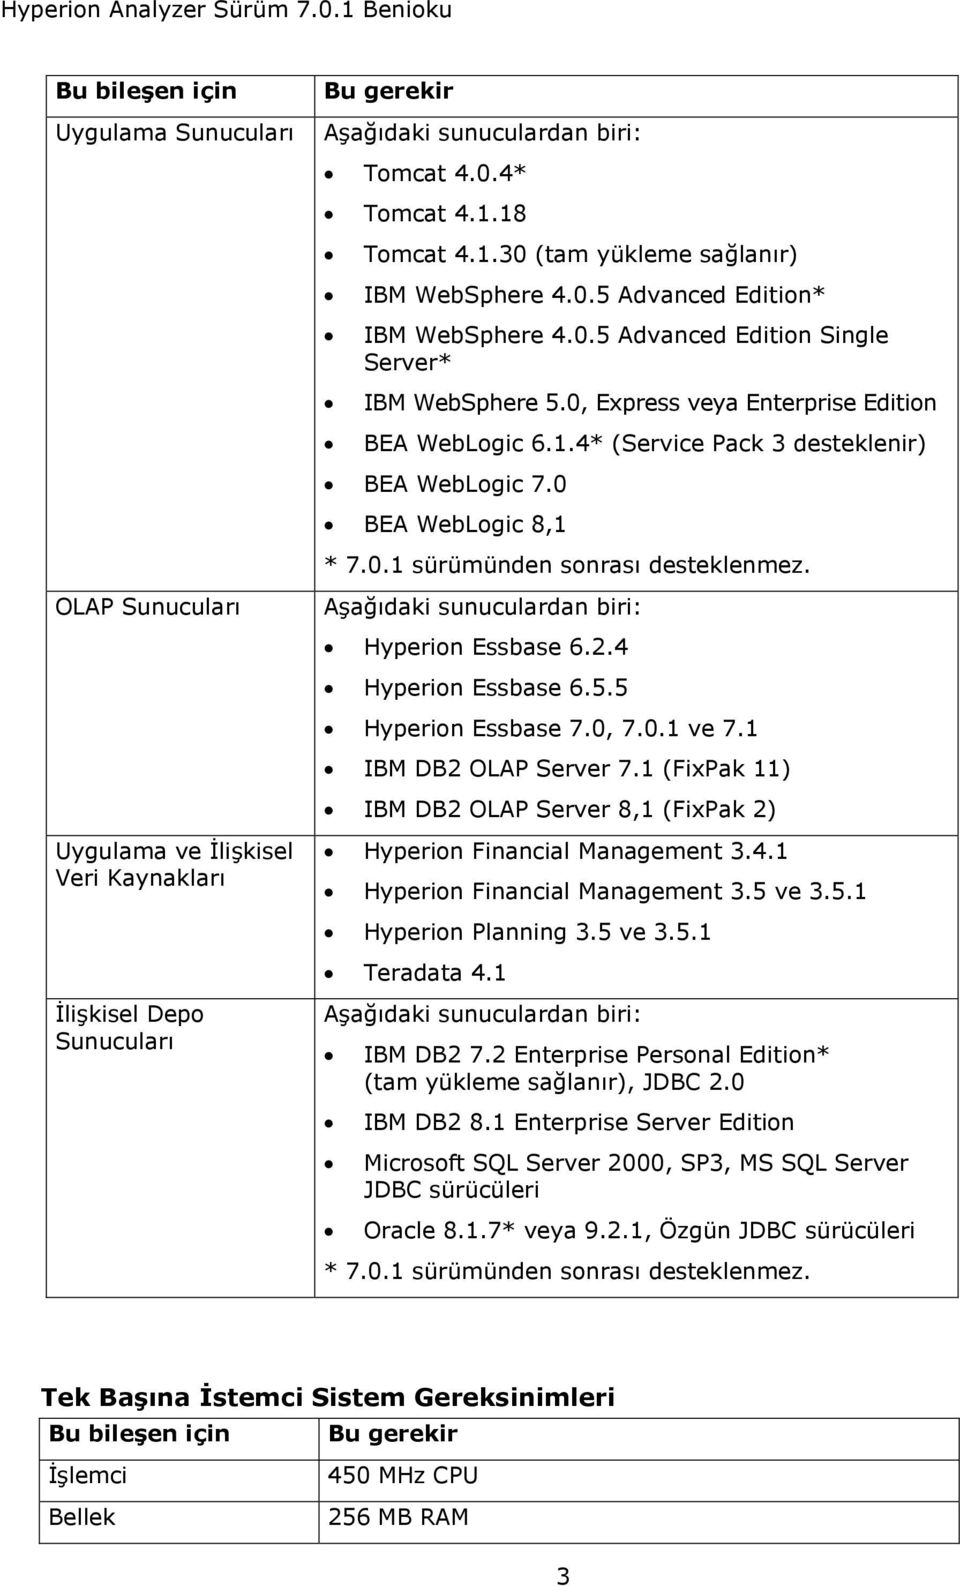 0 BEA WebLogic 8,1 * 7.0.1 sürümünden sonrası desteklenmez. Aşağıdaki sunuculardan biri: Hyperion Essbase 6.2.4 Hyperion Essbase 6.5.5 Hyperion Essbase 7.0, 7.0.1 ve 7.1 IBM DB2 OLAP Server 7.